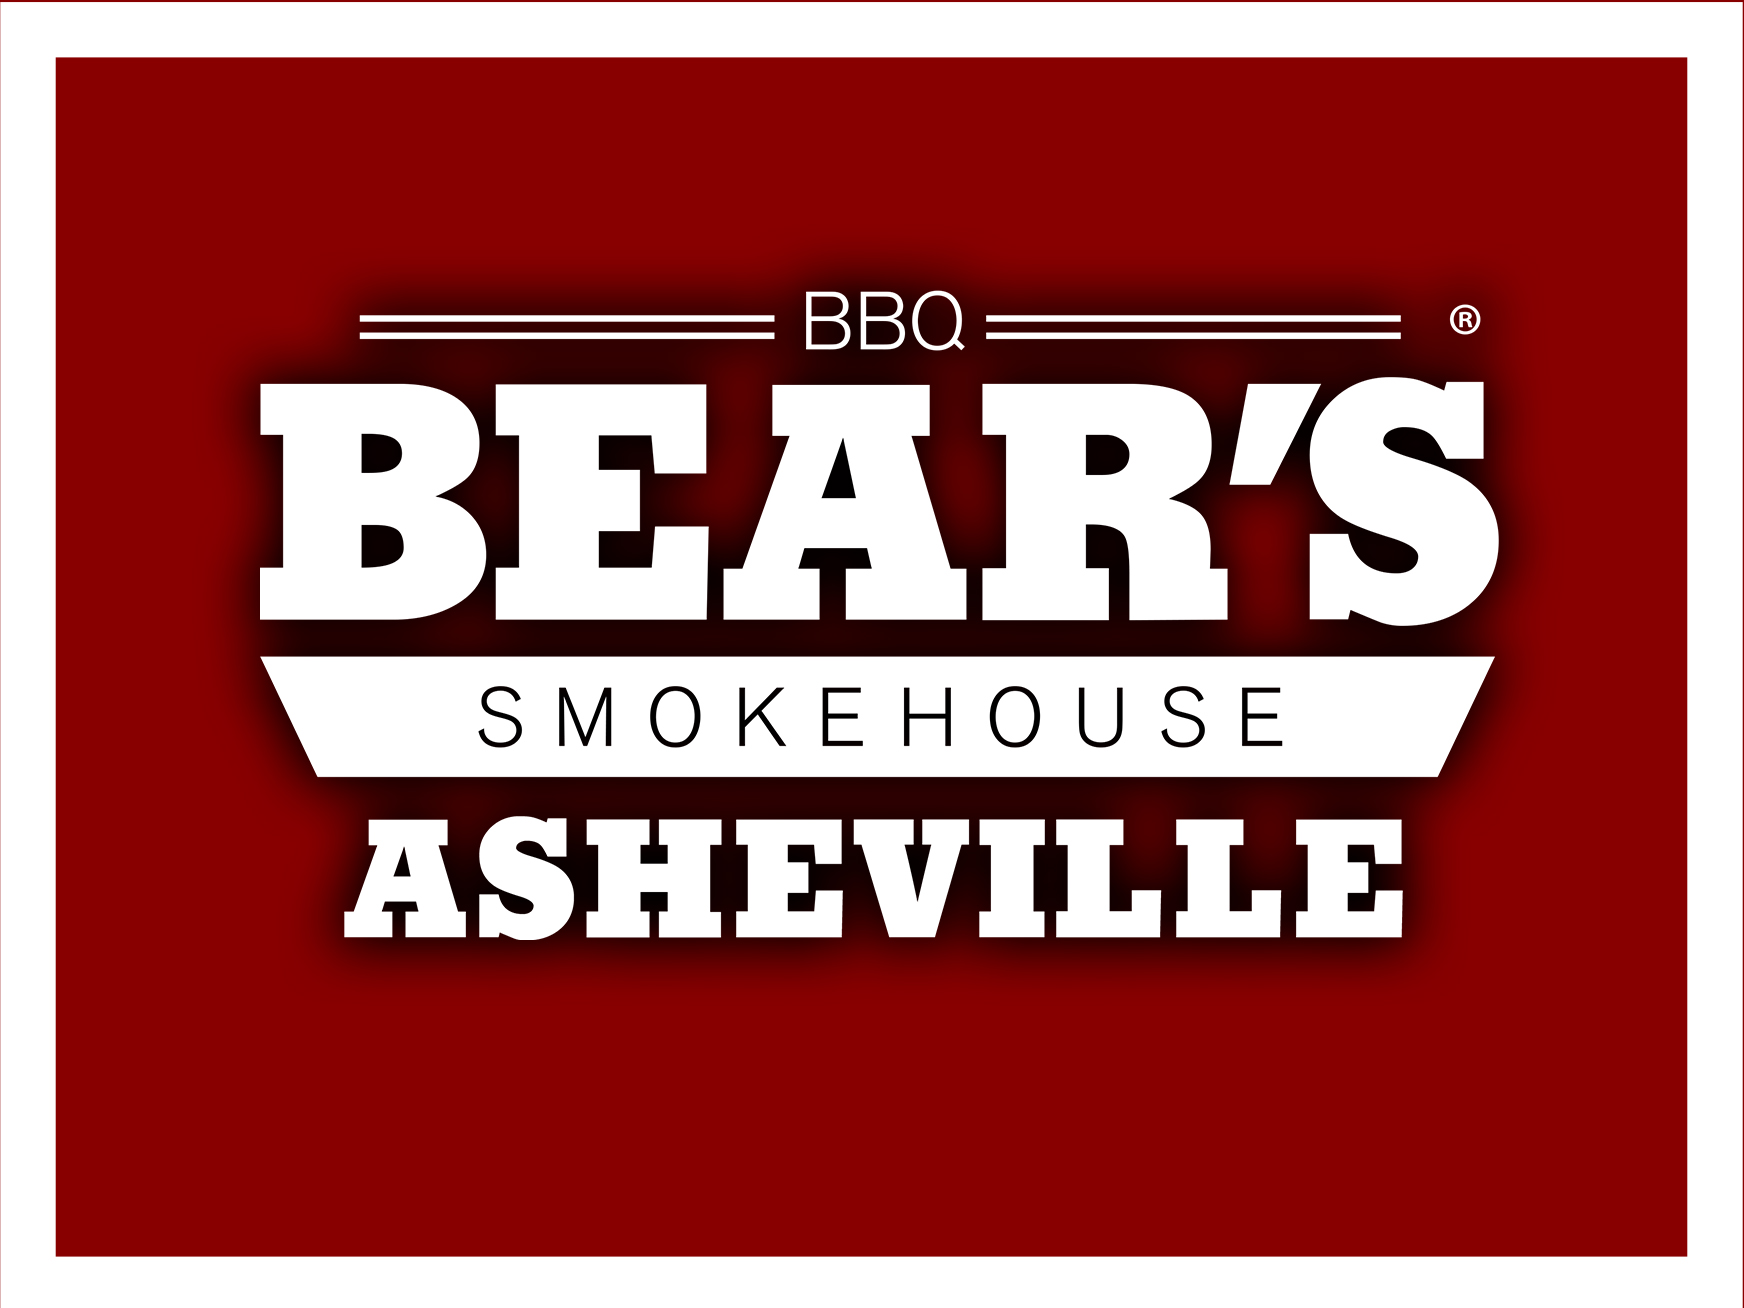 Bear's Smokehouse Asheville LLC